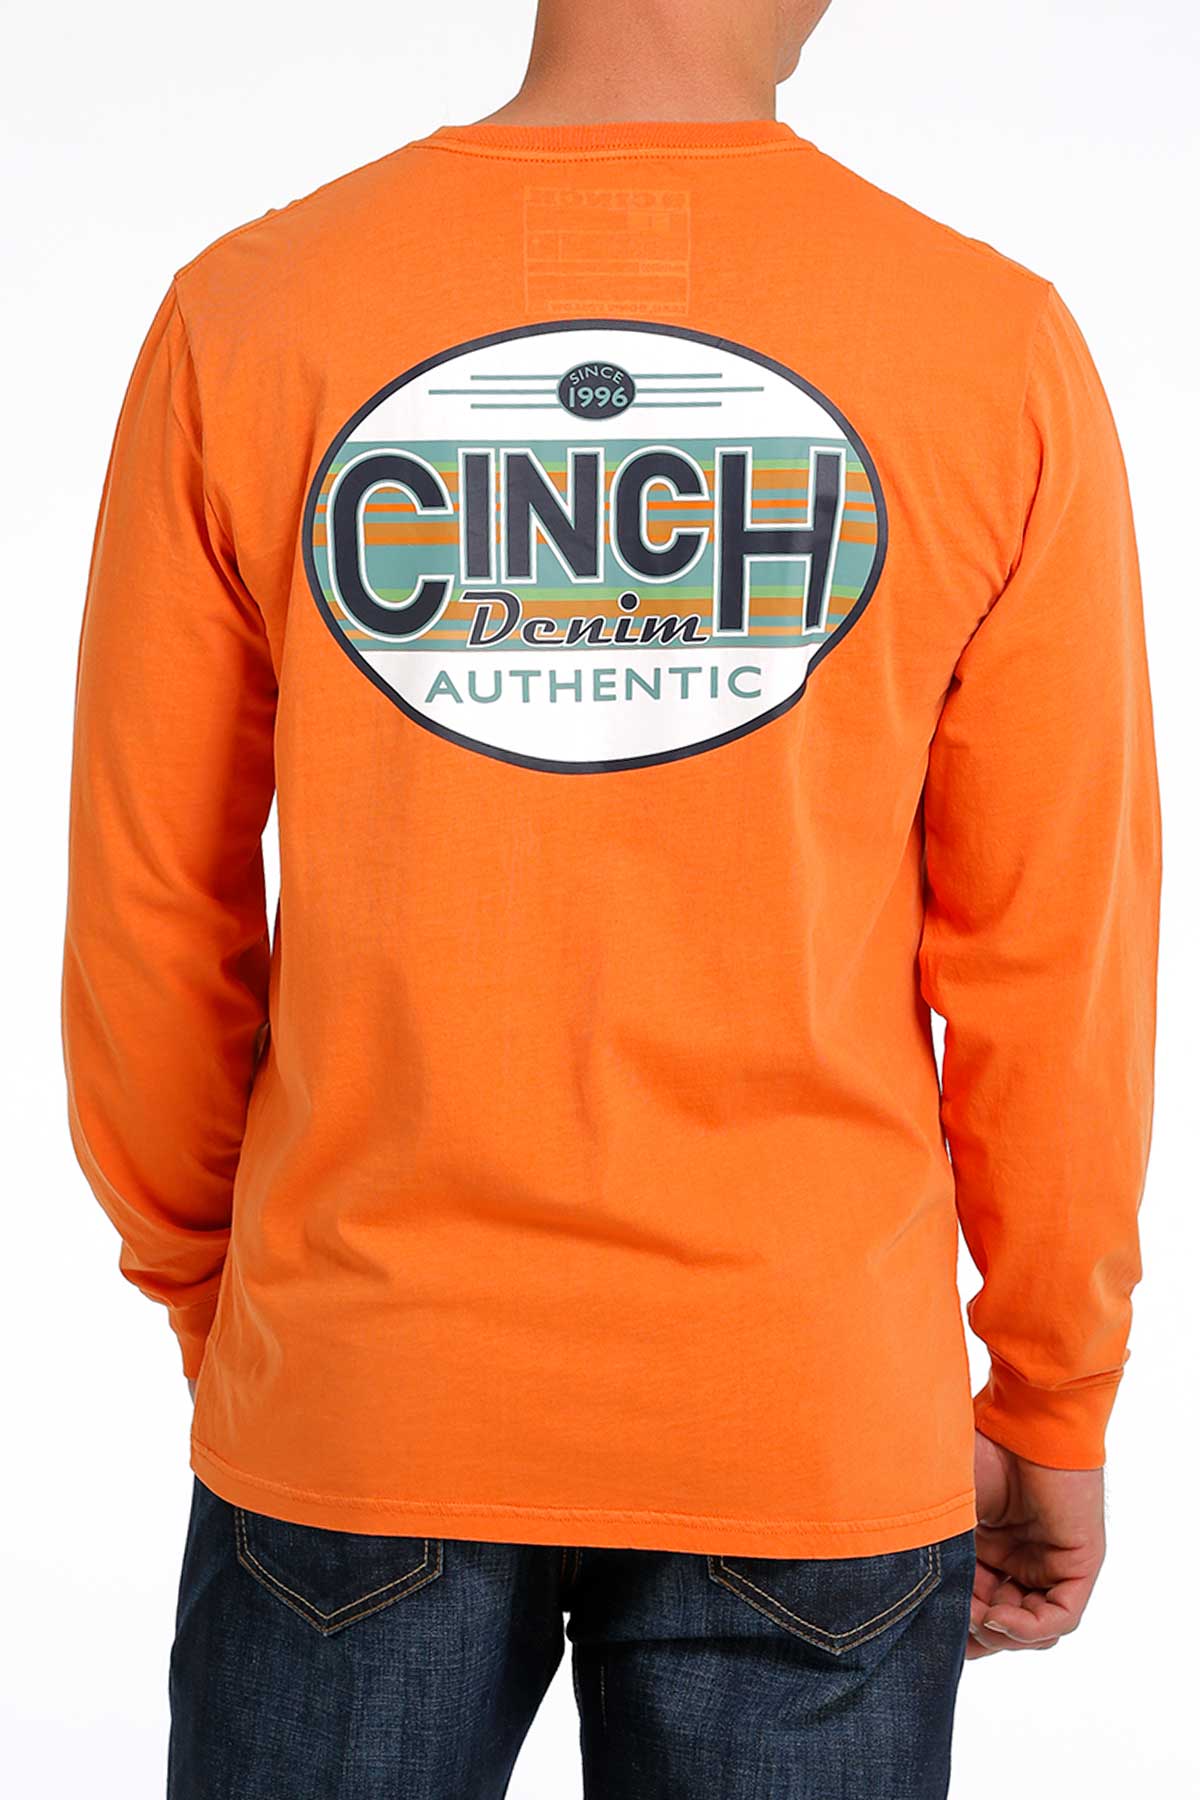 CINCH MEN'S L/S TEE - ORANGE - Nate's Western Wear